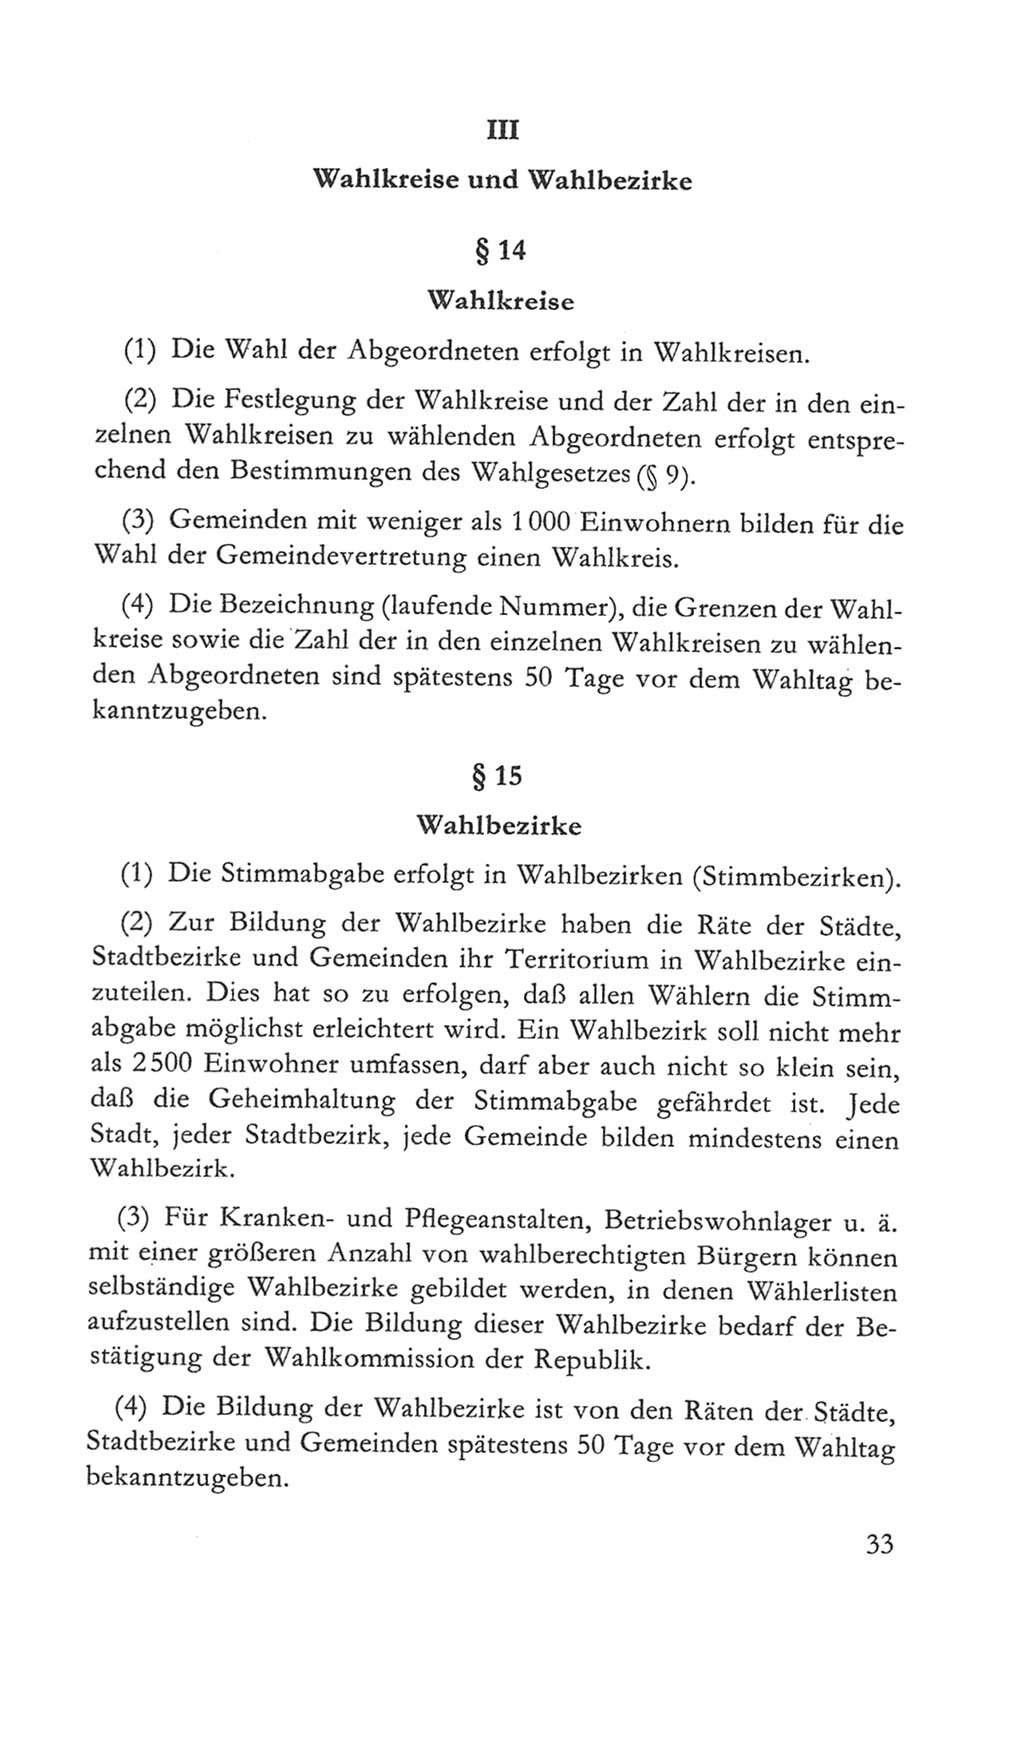 Volkskammer (VK) der Deutschen Demokratischen Republik (DDR) 5. Wahlperiode 1967-1971, Seite 33 (VK. DDR 5. WP. 1967-1971, S. 33)